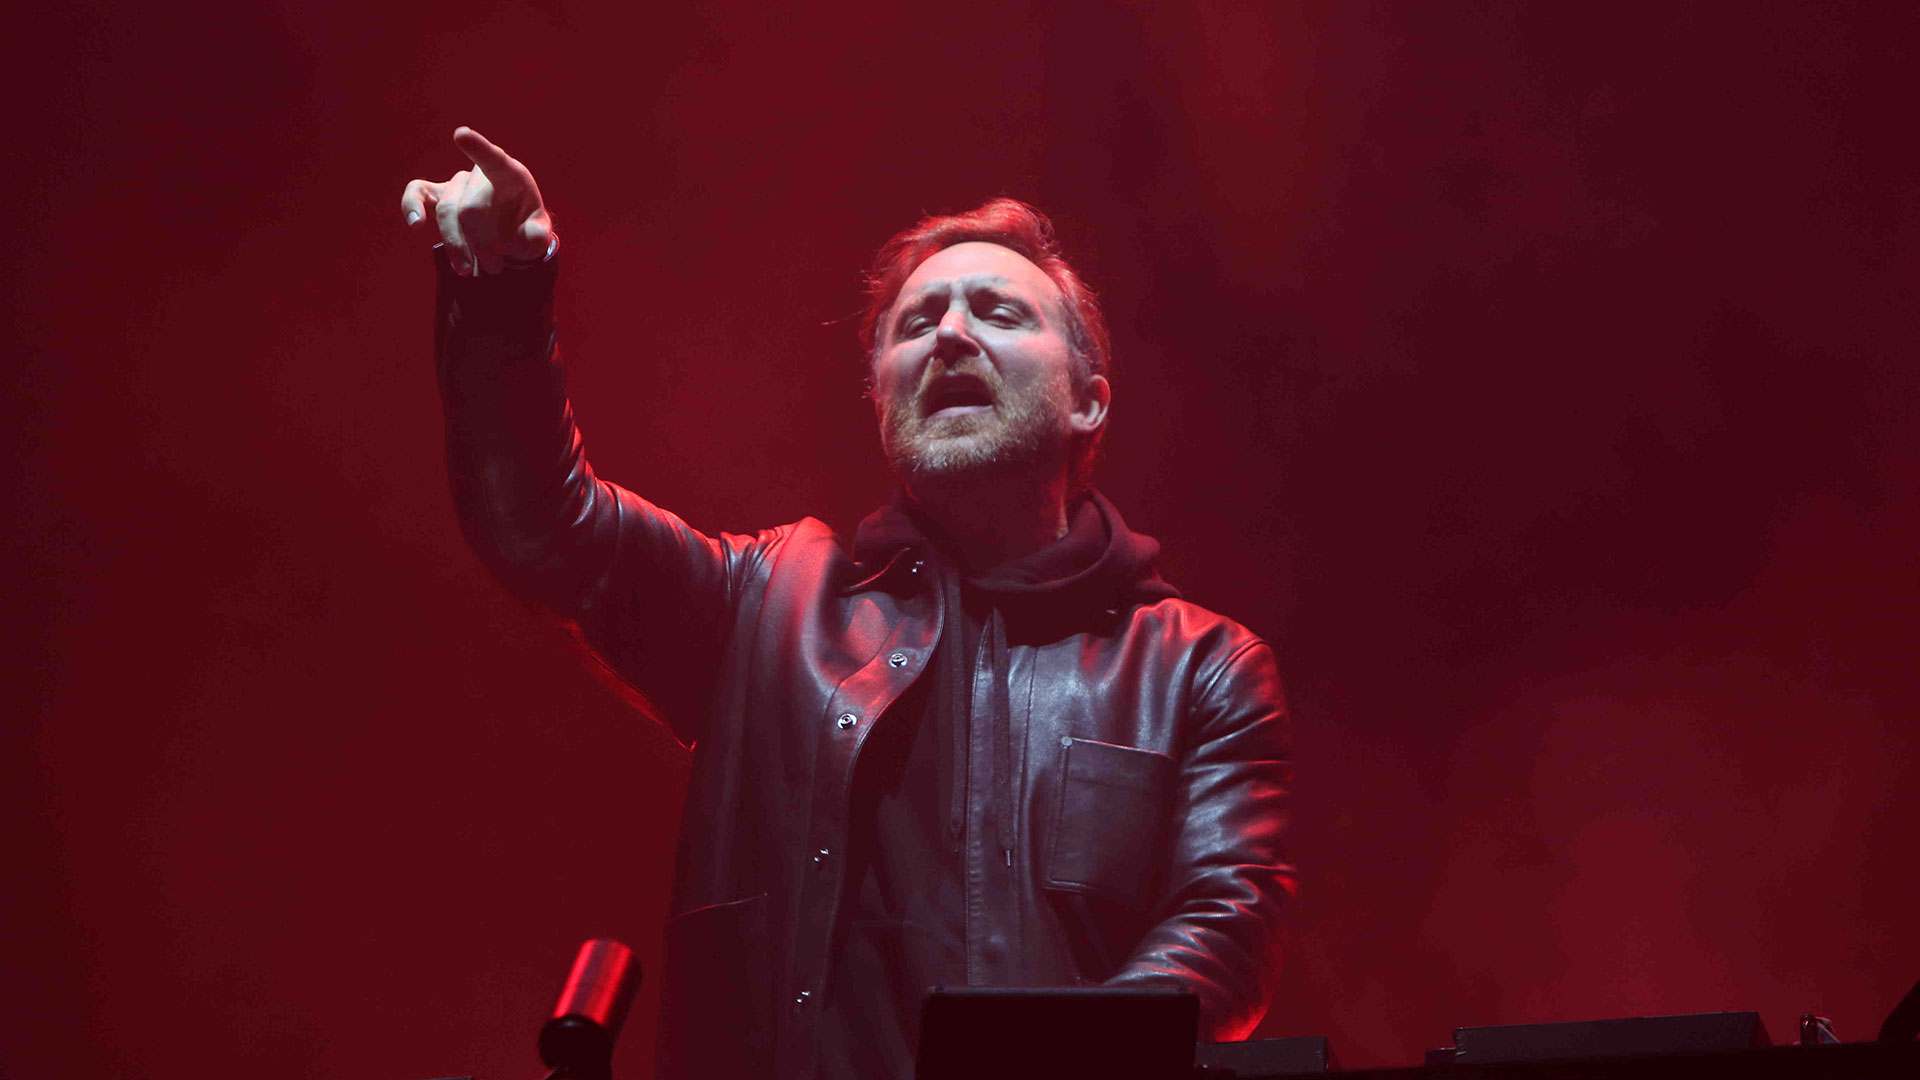 David Guetta, Swedish House Mafia y otros artistas deslumbraron con sus actuaciones en el último día del Ultra